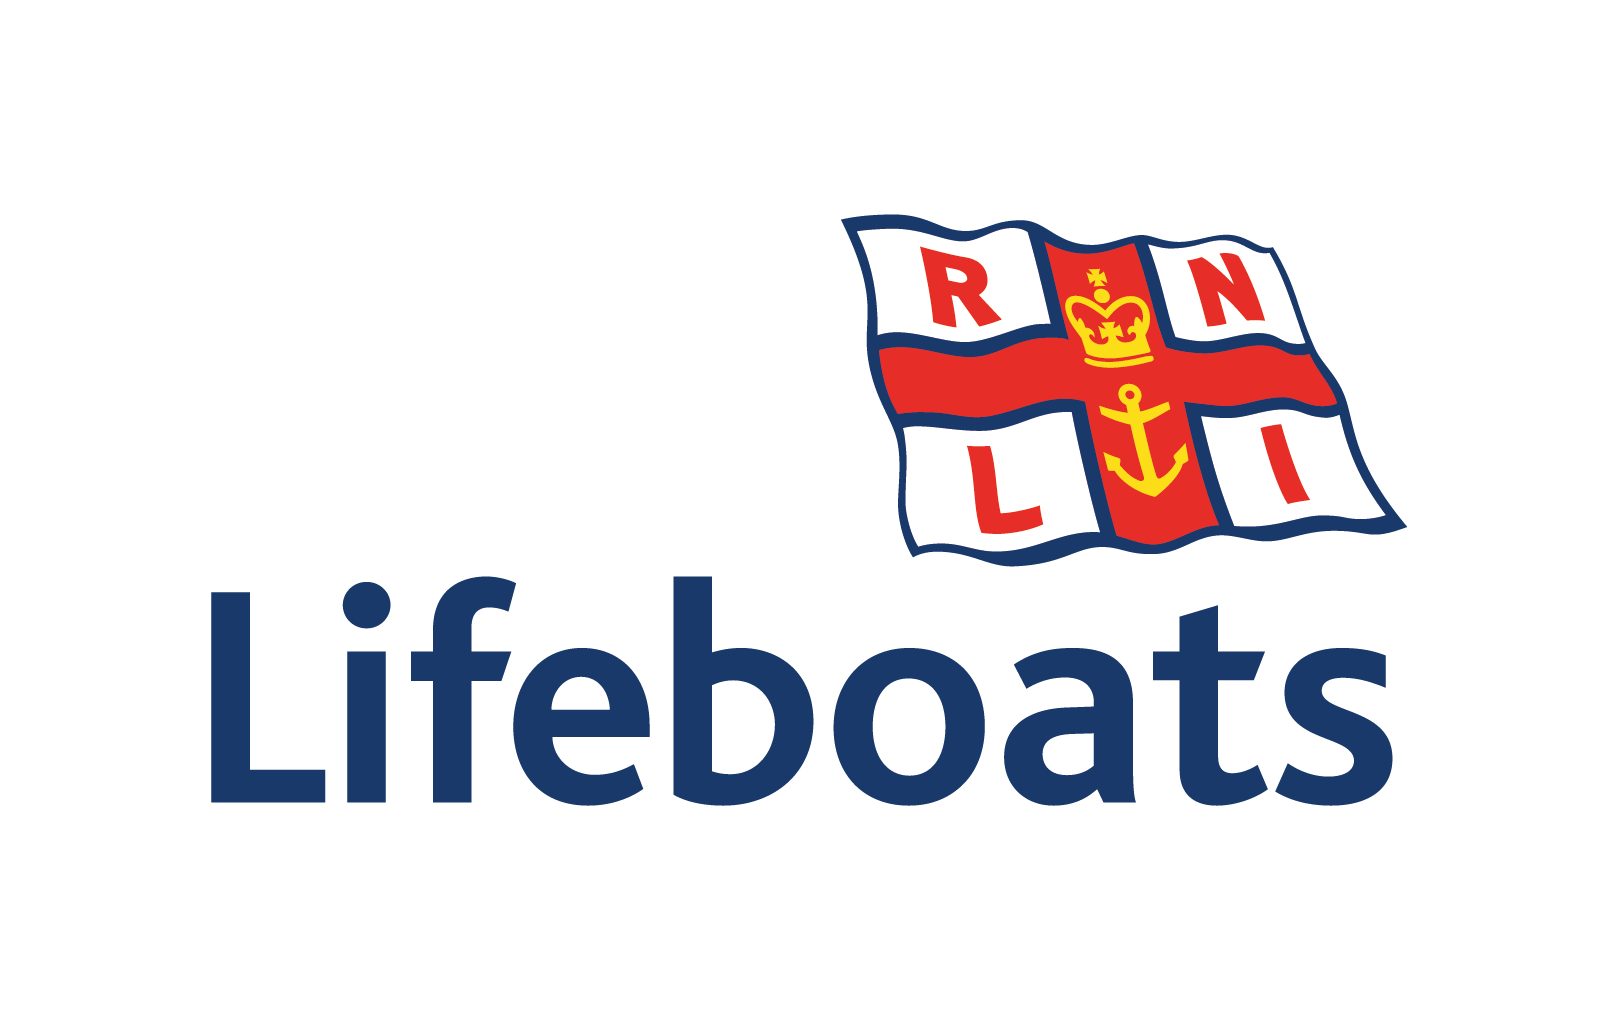 LifeboatsBlue